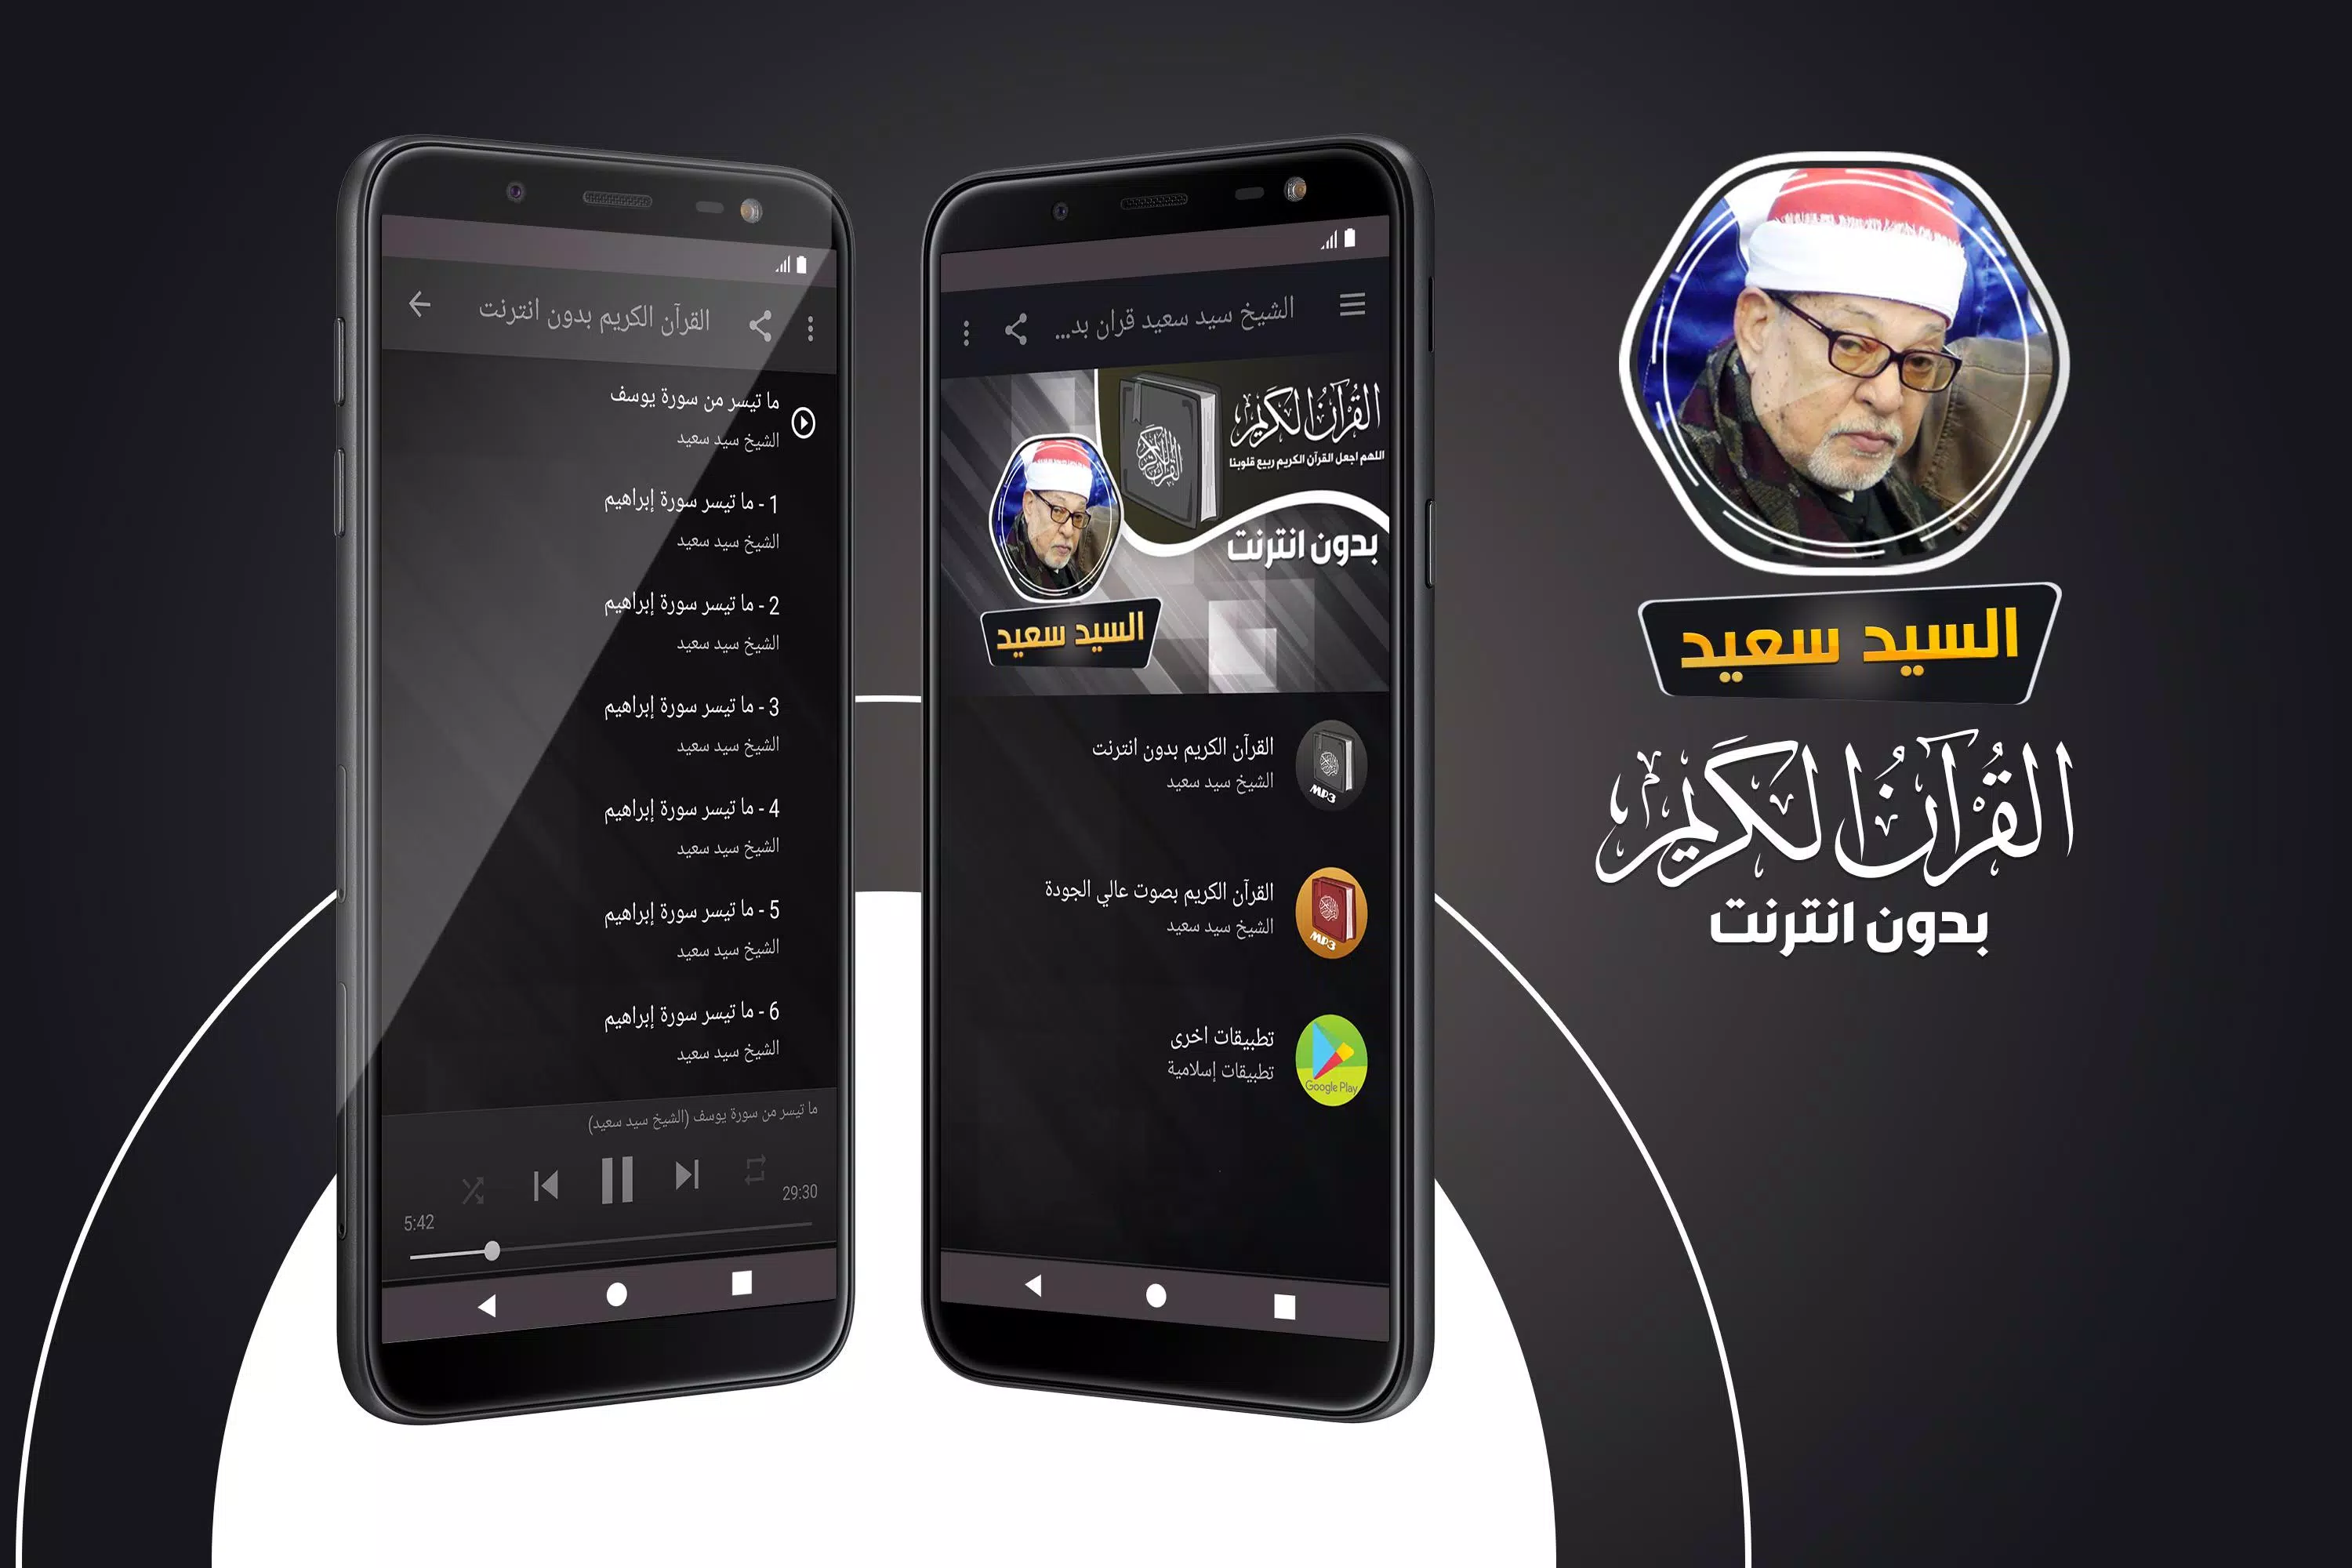 الشيخ سيد سعيد القران الكريم ب APK for Android Download